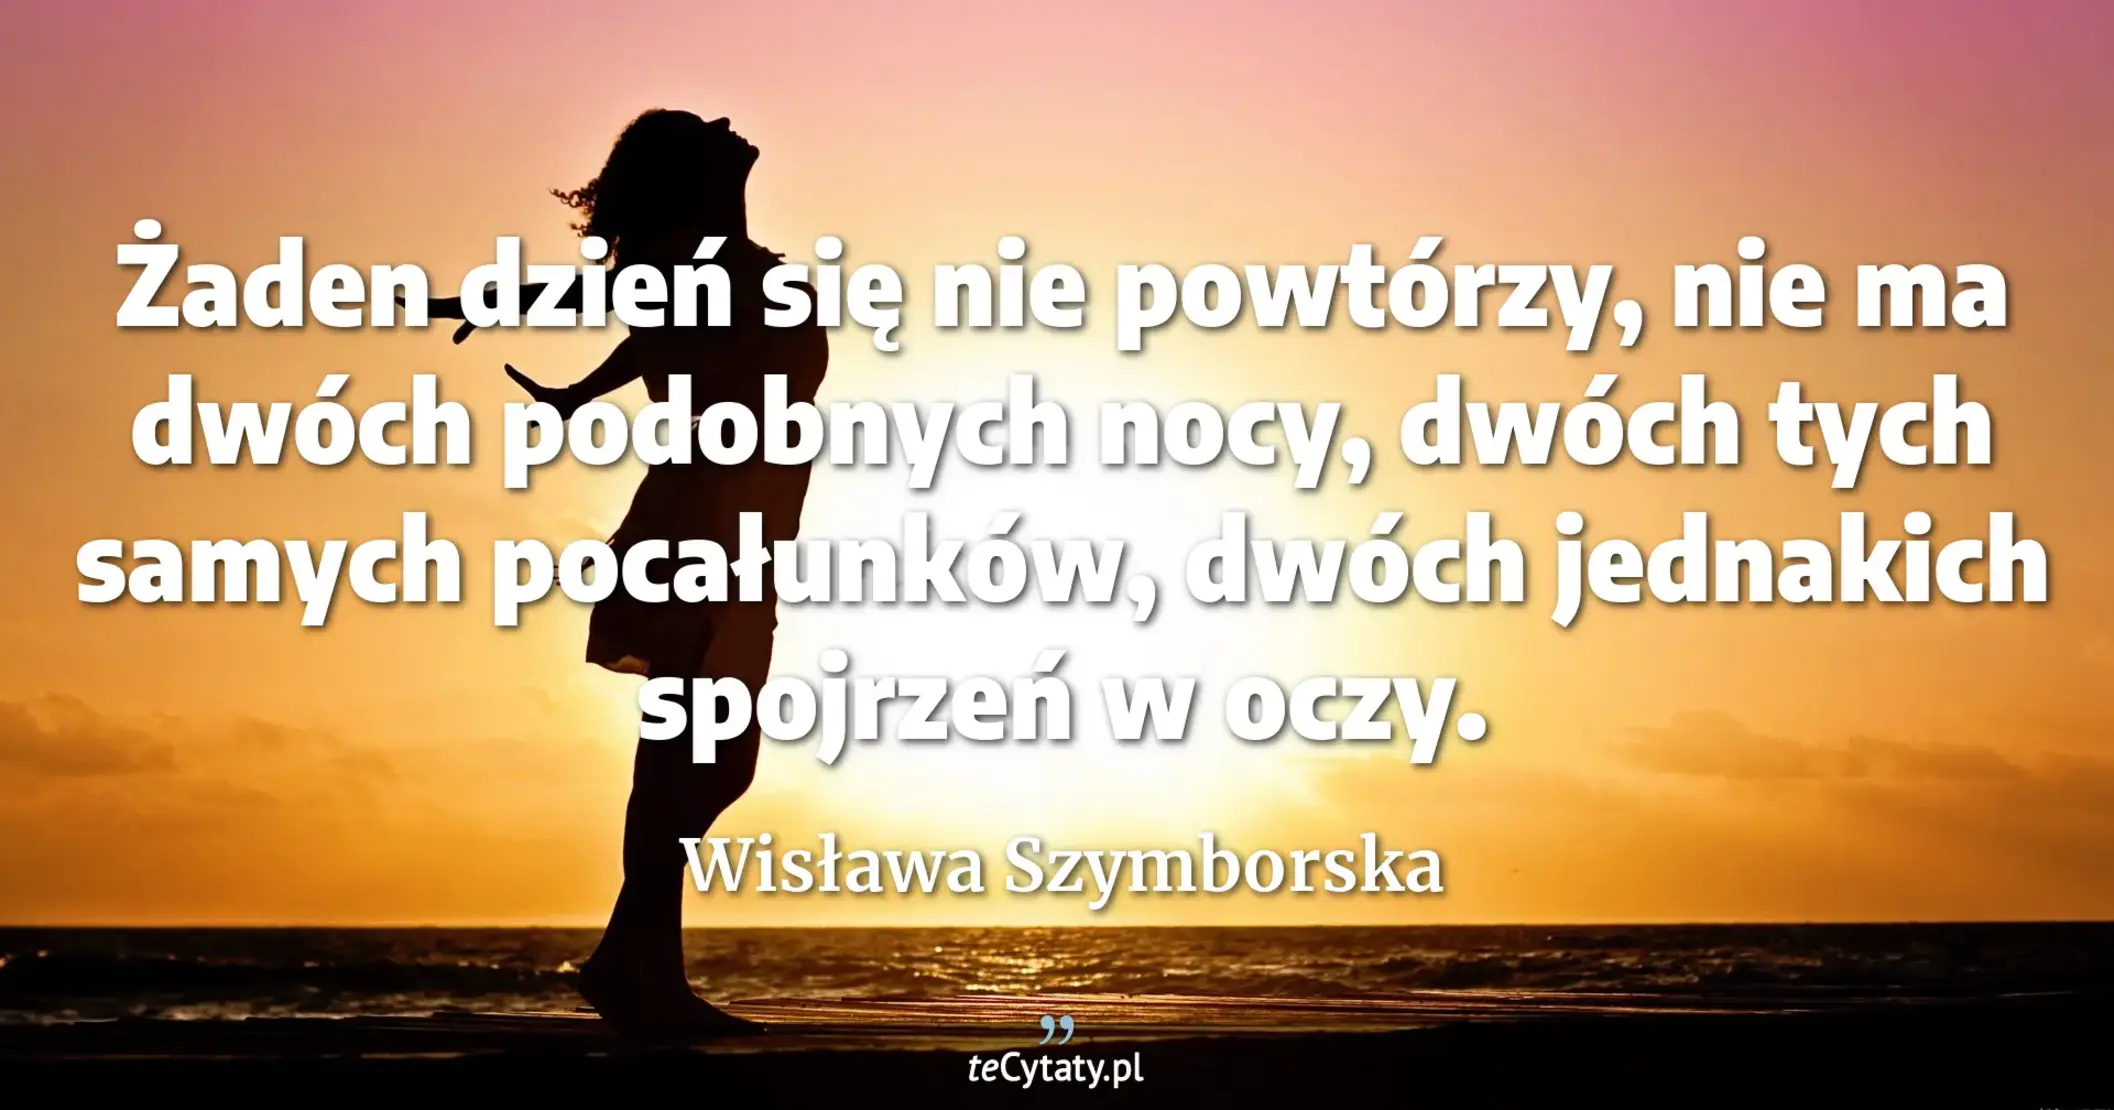 Żaden dzień się nie powtórzy, <br> nie ma dwóch podobnych nocy, <br> dwóch tych samych pocałunków, <br> dwóch jednakich spojrzeń w oczy. - Wisława Szymborska